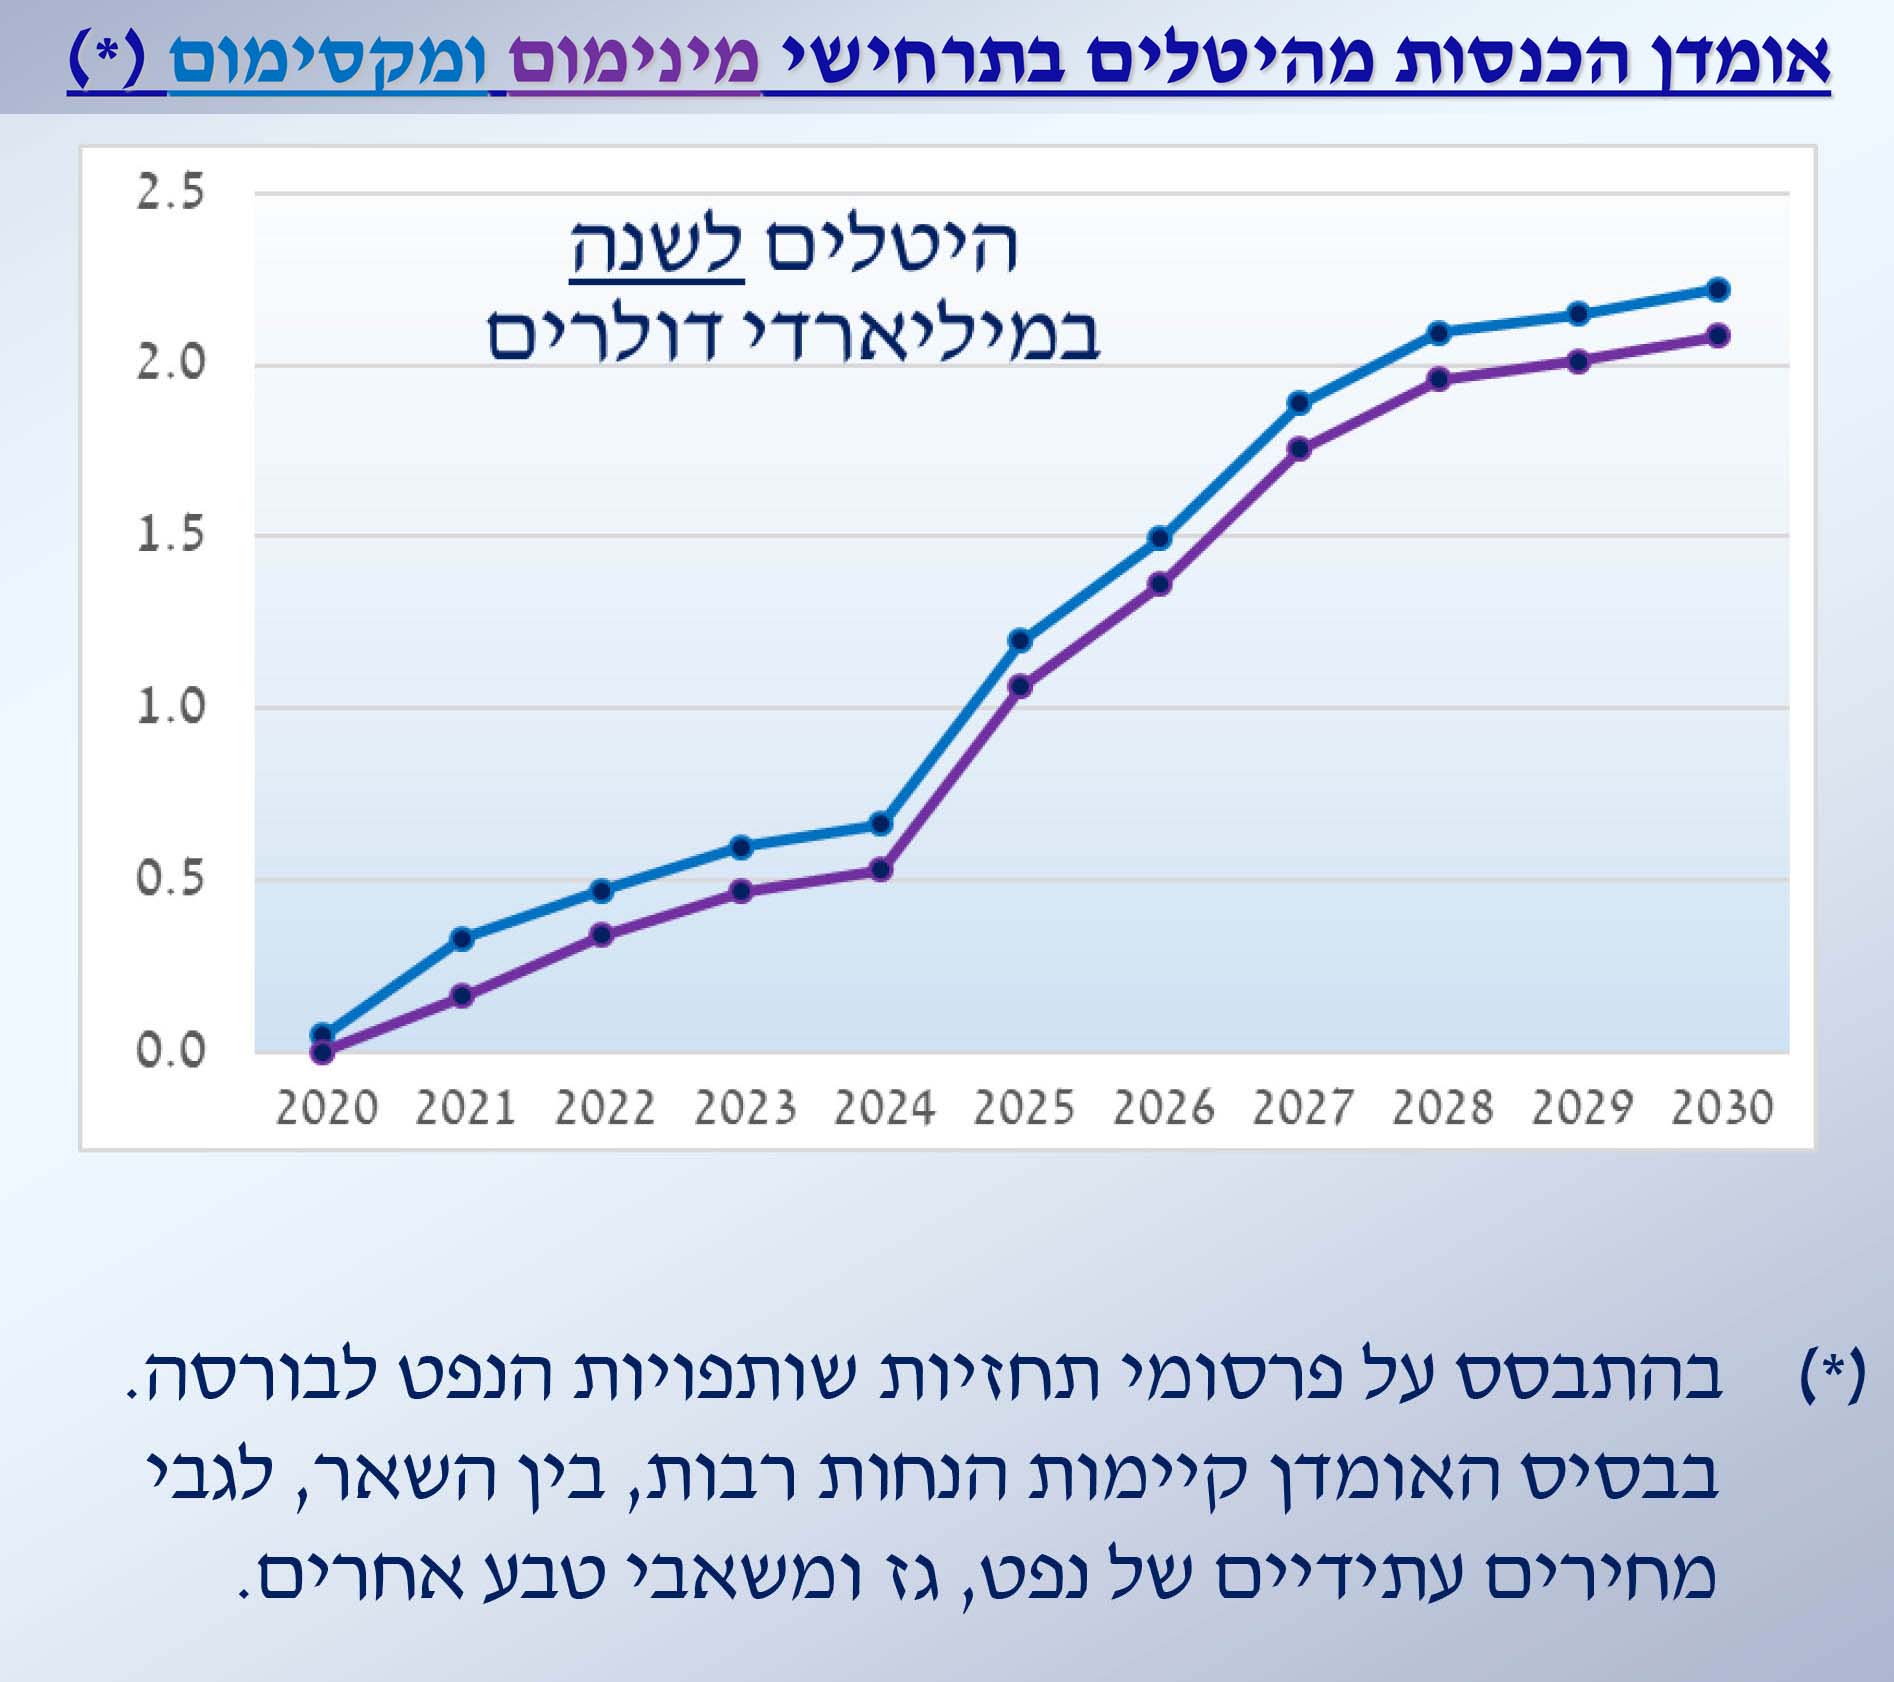 אומדן הכנסות מהיטלים בתרחישי מינימום (סגול) ומקסימום (כחול) (רשות המיסים בישראל)